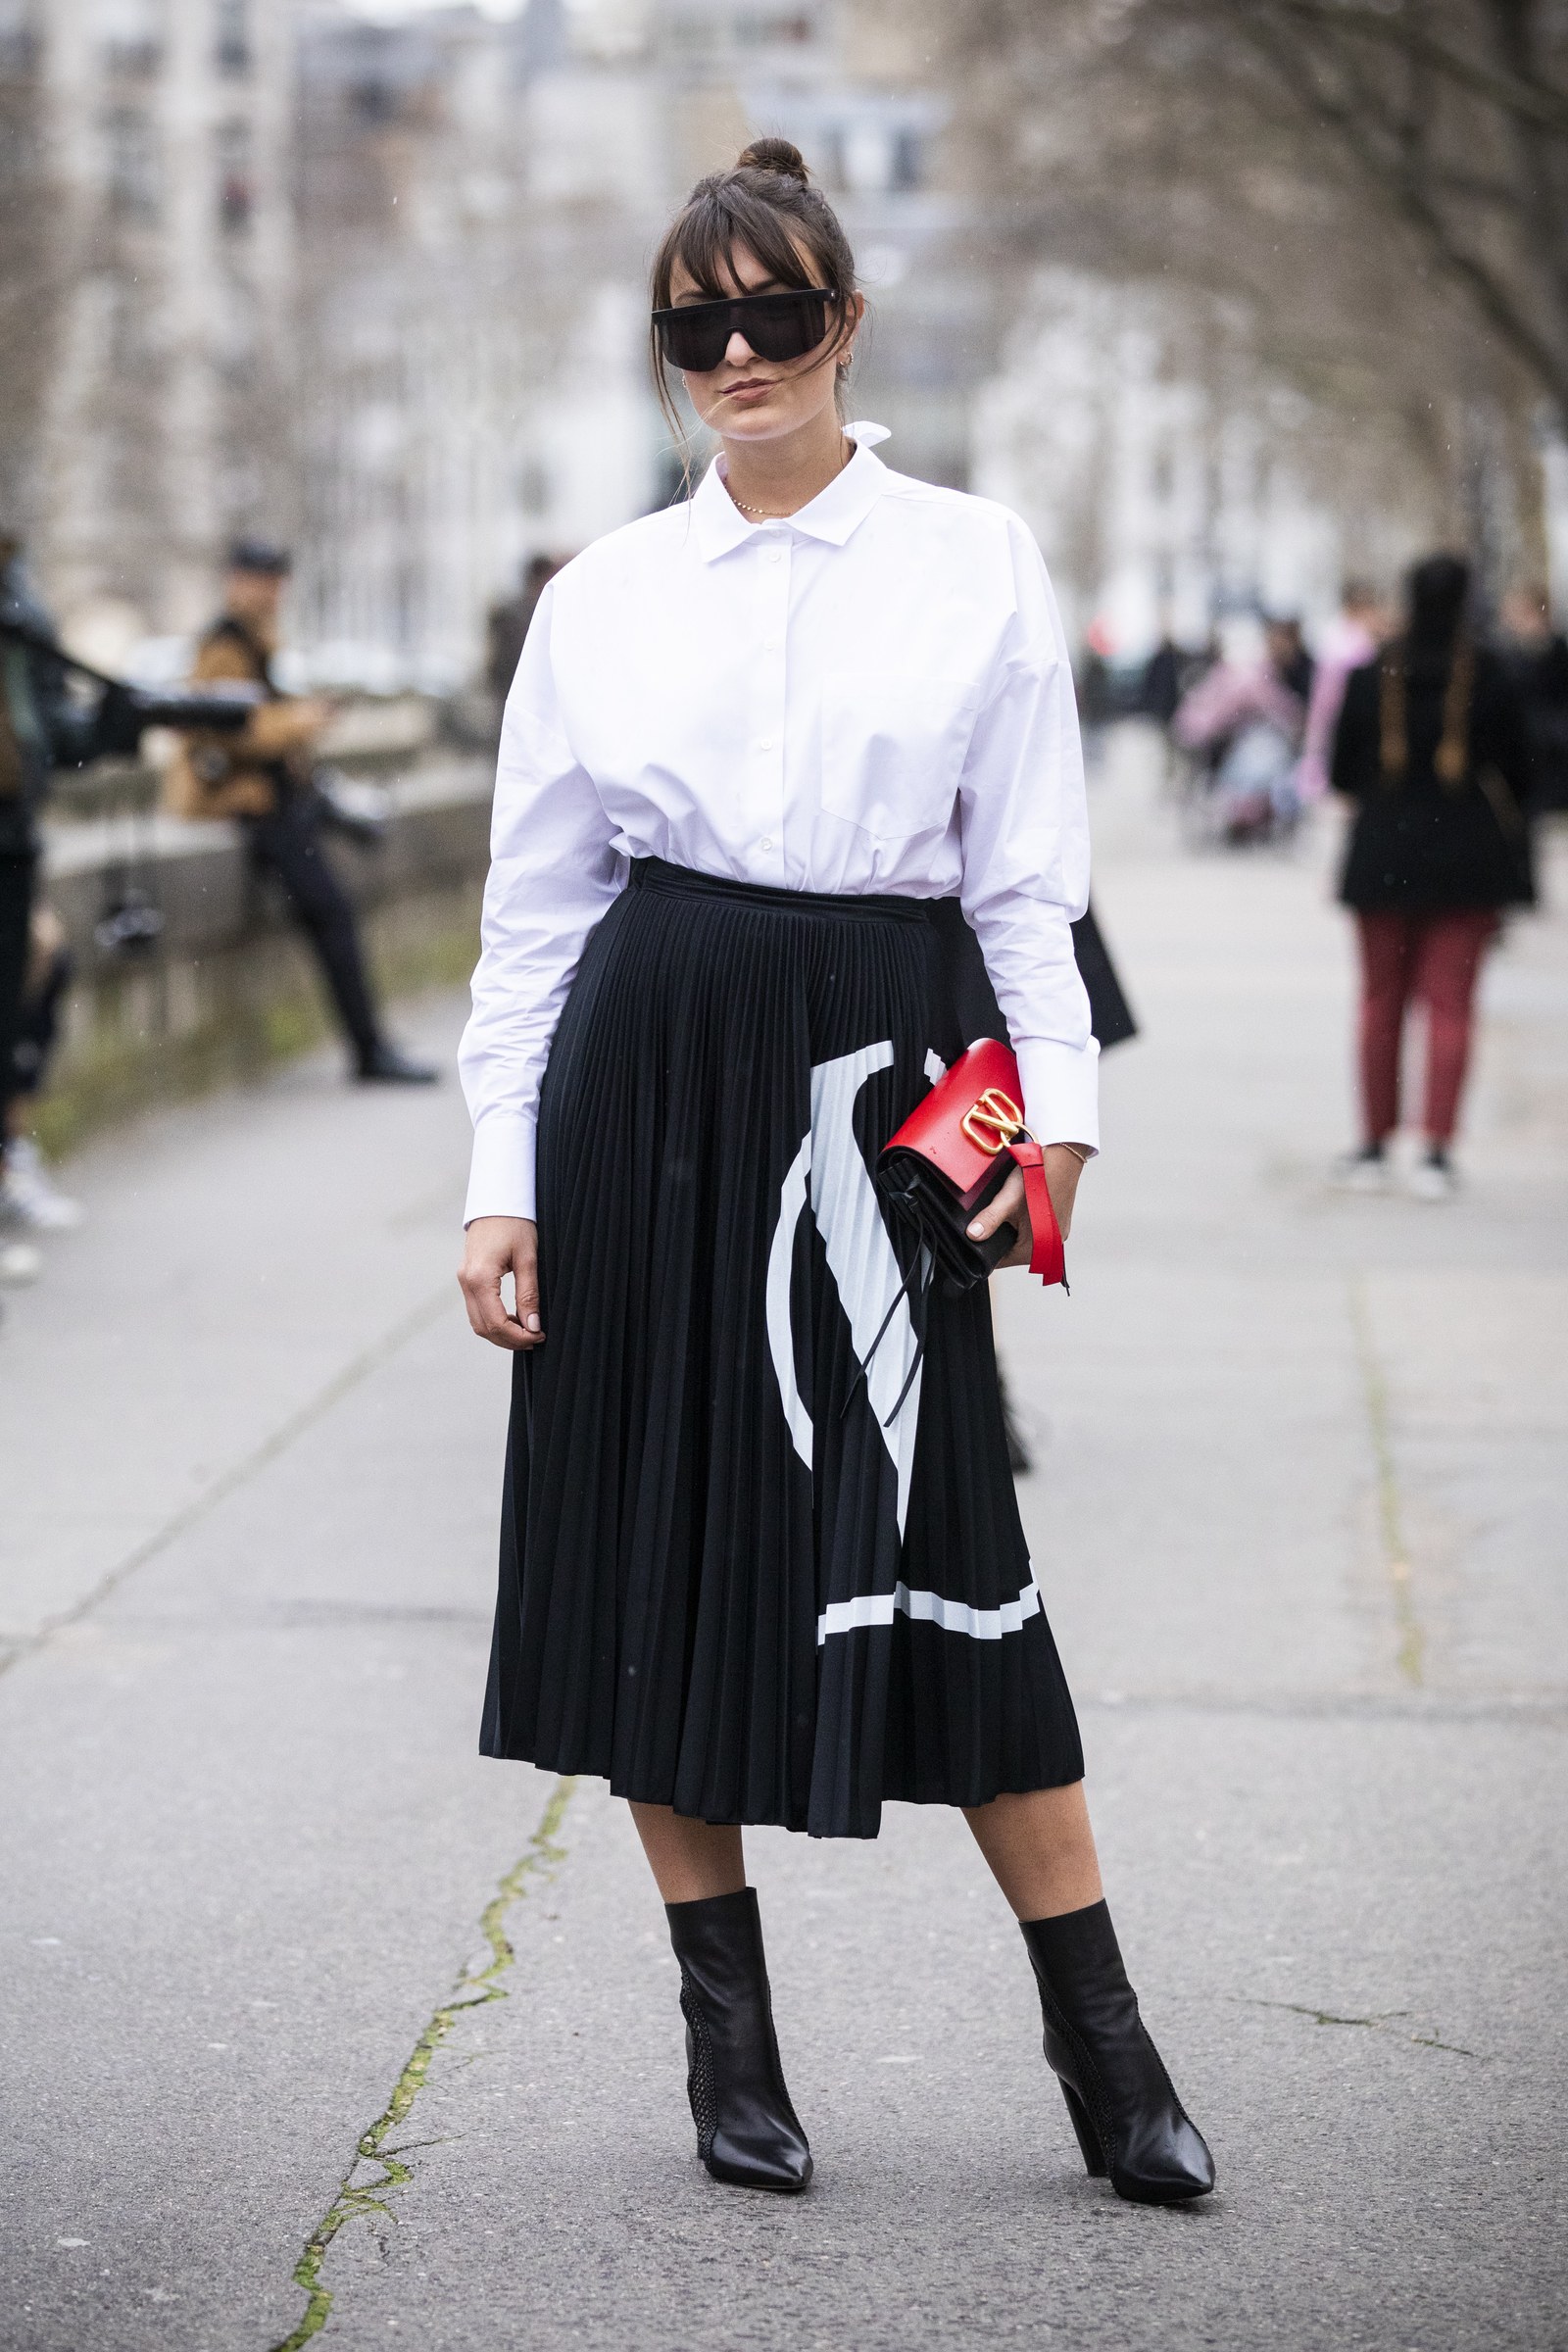 fashionista mặc áo sơmi trắng và chân váy đen valentino